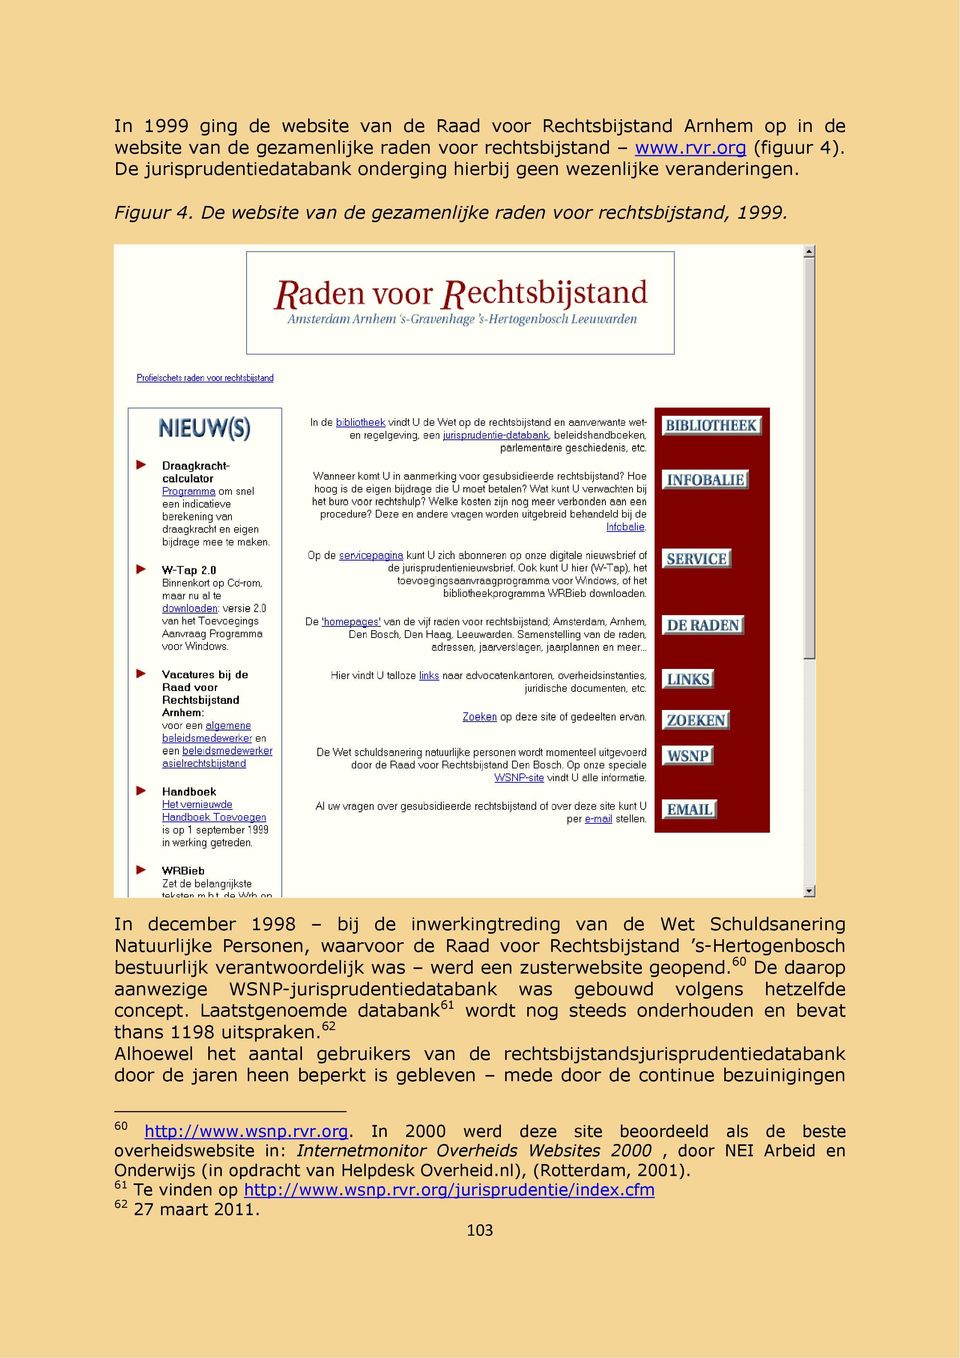 In december 1998 bij de inwerkingtreding van de Wet Schuldsanering Natuurlijke Personen, waarvoor de Raad voor Rechtsbijstand s-hertogenbosch bestuurlijk verantwoordelijk was werd een zusterwebsite